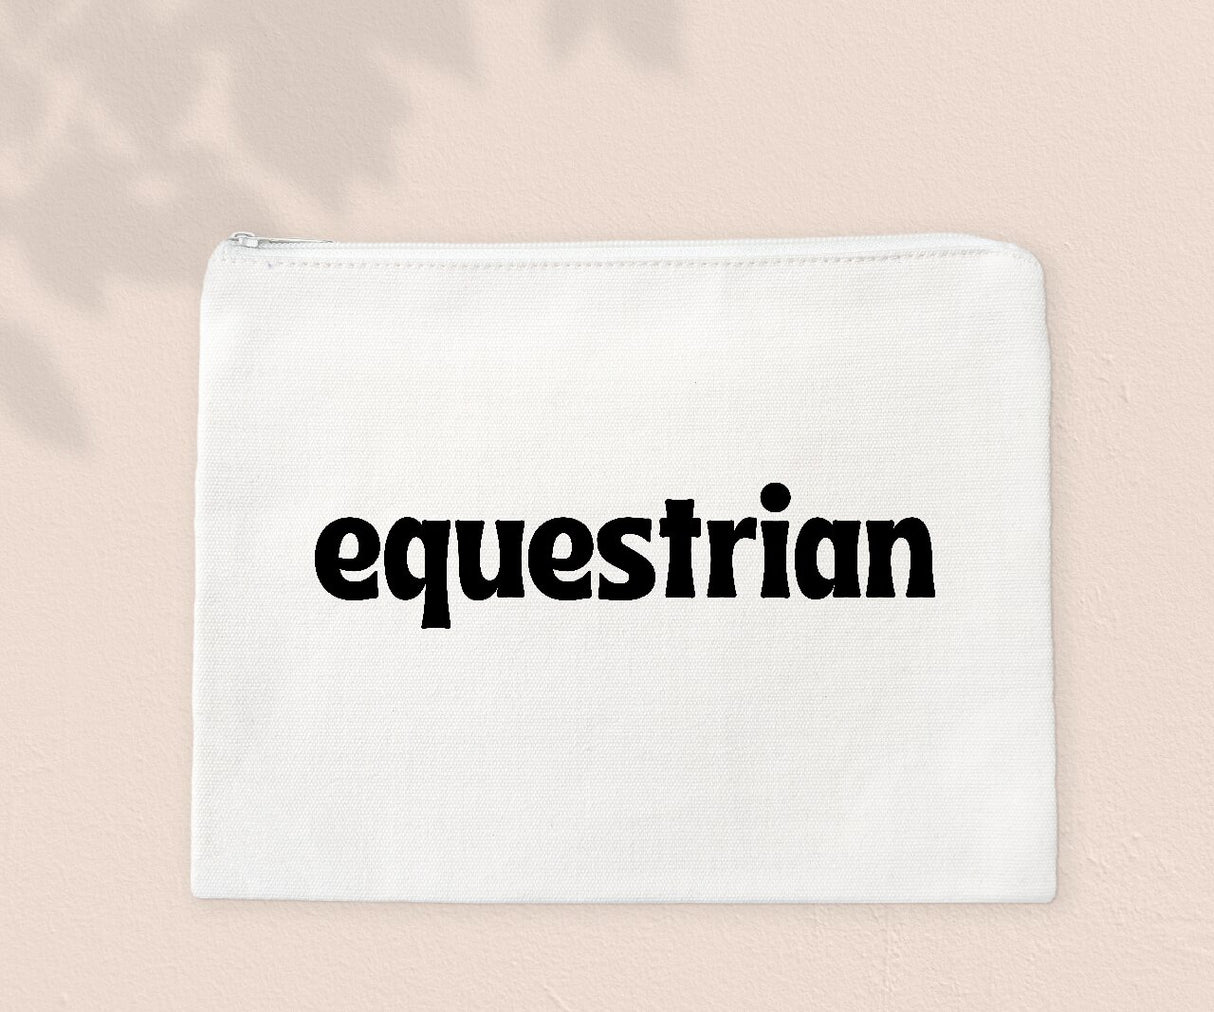 Equestrian - Zipper Bags for Cosmetics, Pencils or Show Cash